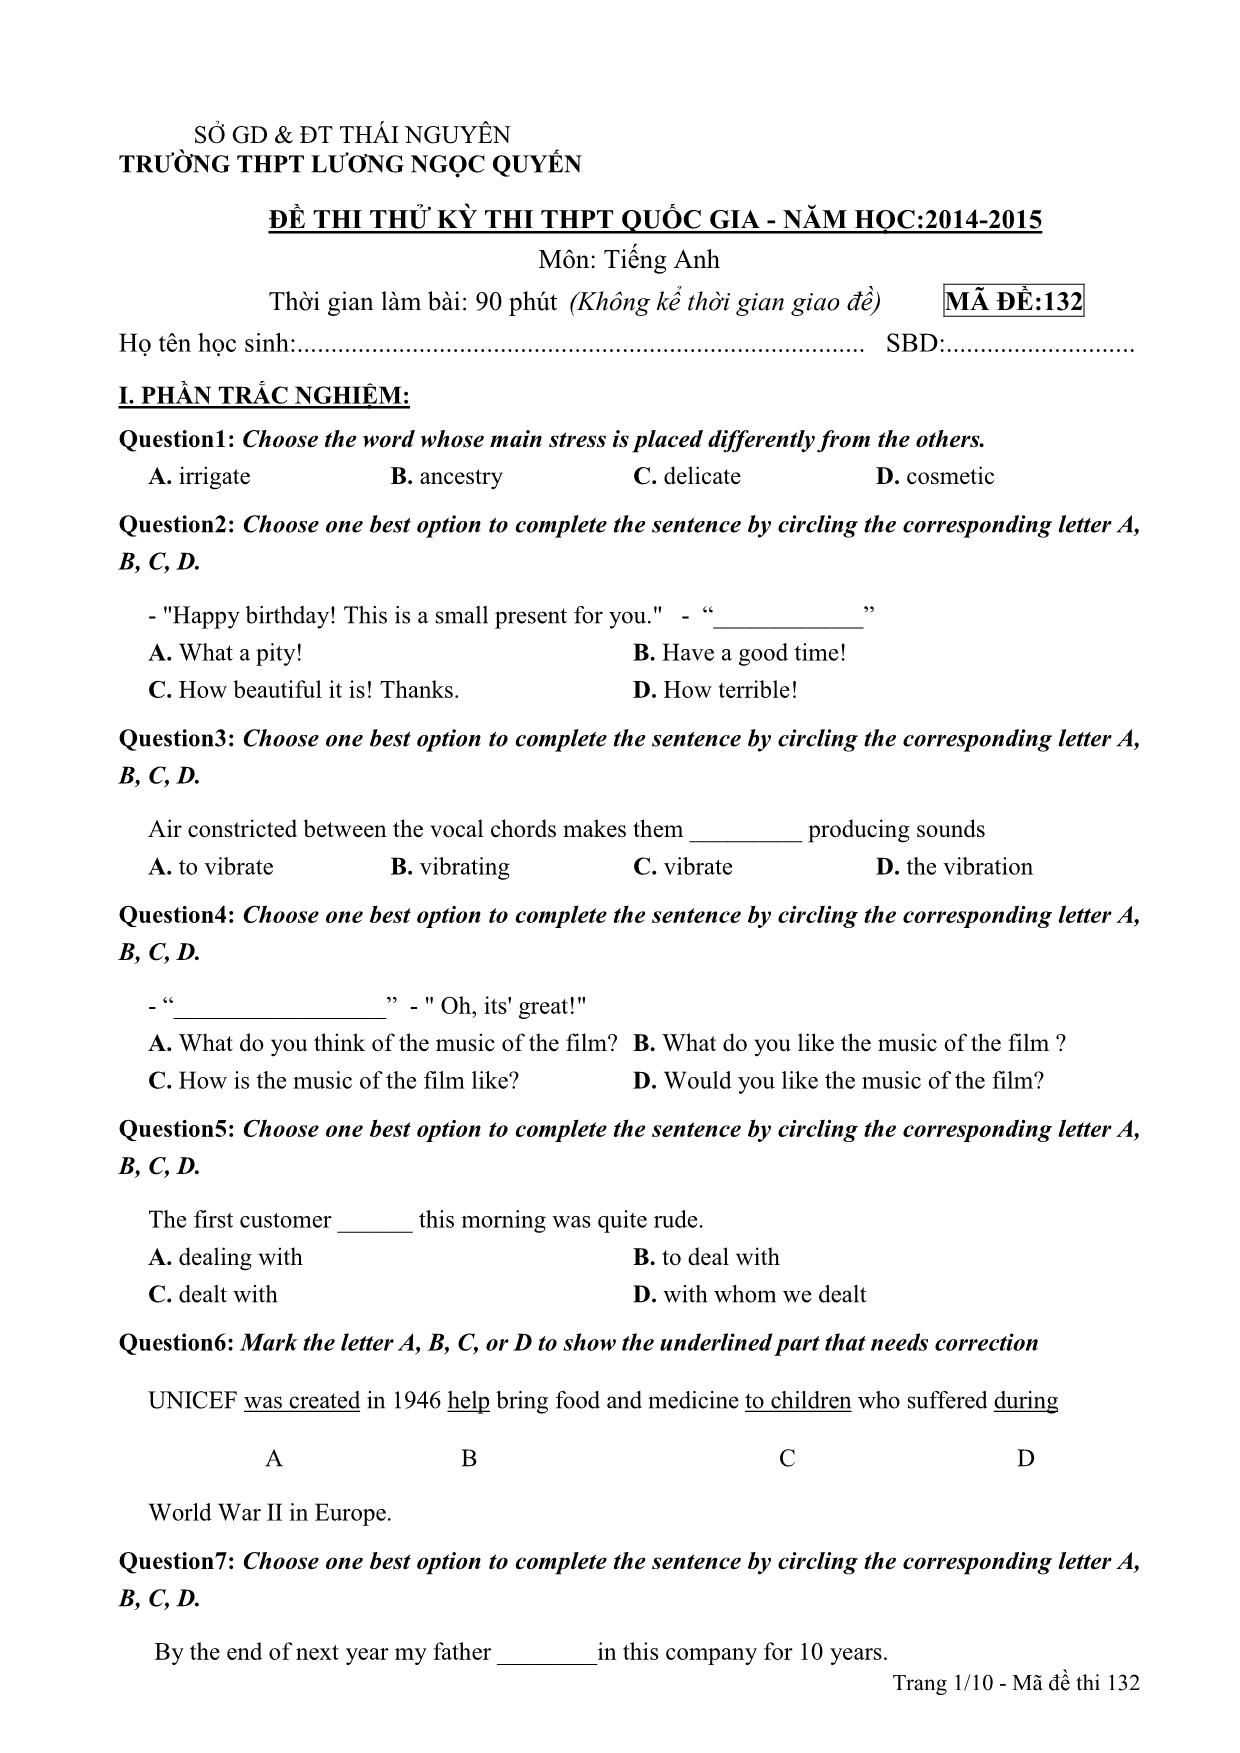 Đề thi thử THPT Quốc gia môn Tiếng Anh - Mã đề 132 - Năm học 2014-2015 - Trường THPT Lương Ngọc Quyến (Có đáp án) trang 1